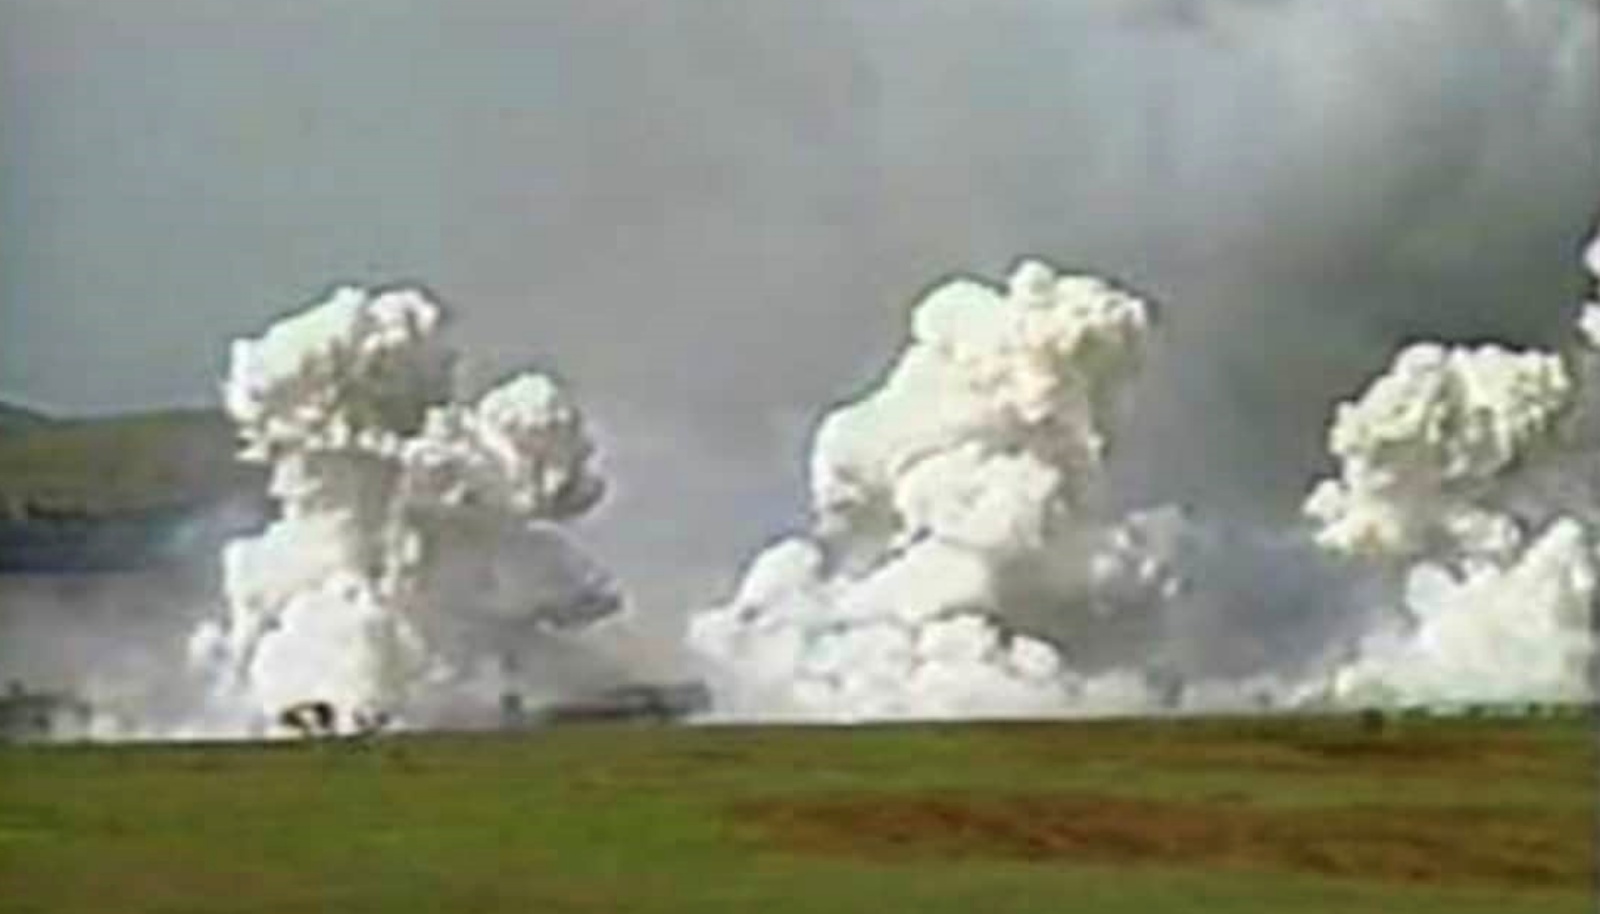 انفجار ذخائر أطلقت كرات صغيرة وحارقة تحتوي على الفوسفور الأبيض سقطت ببطء على الأرض